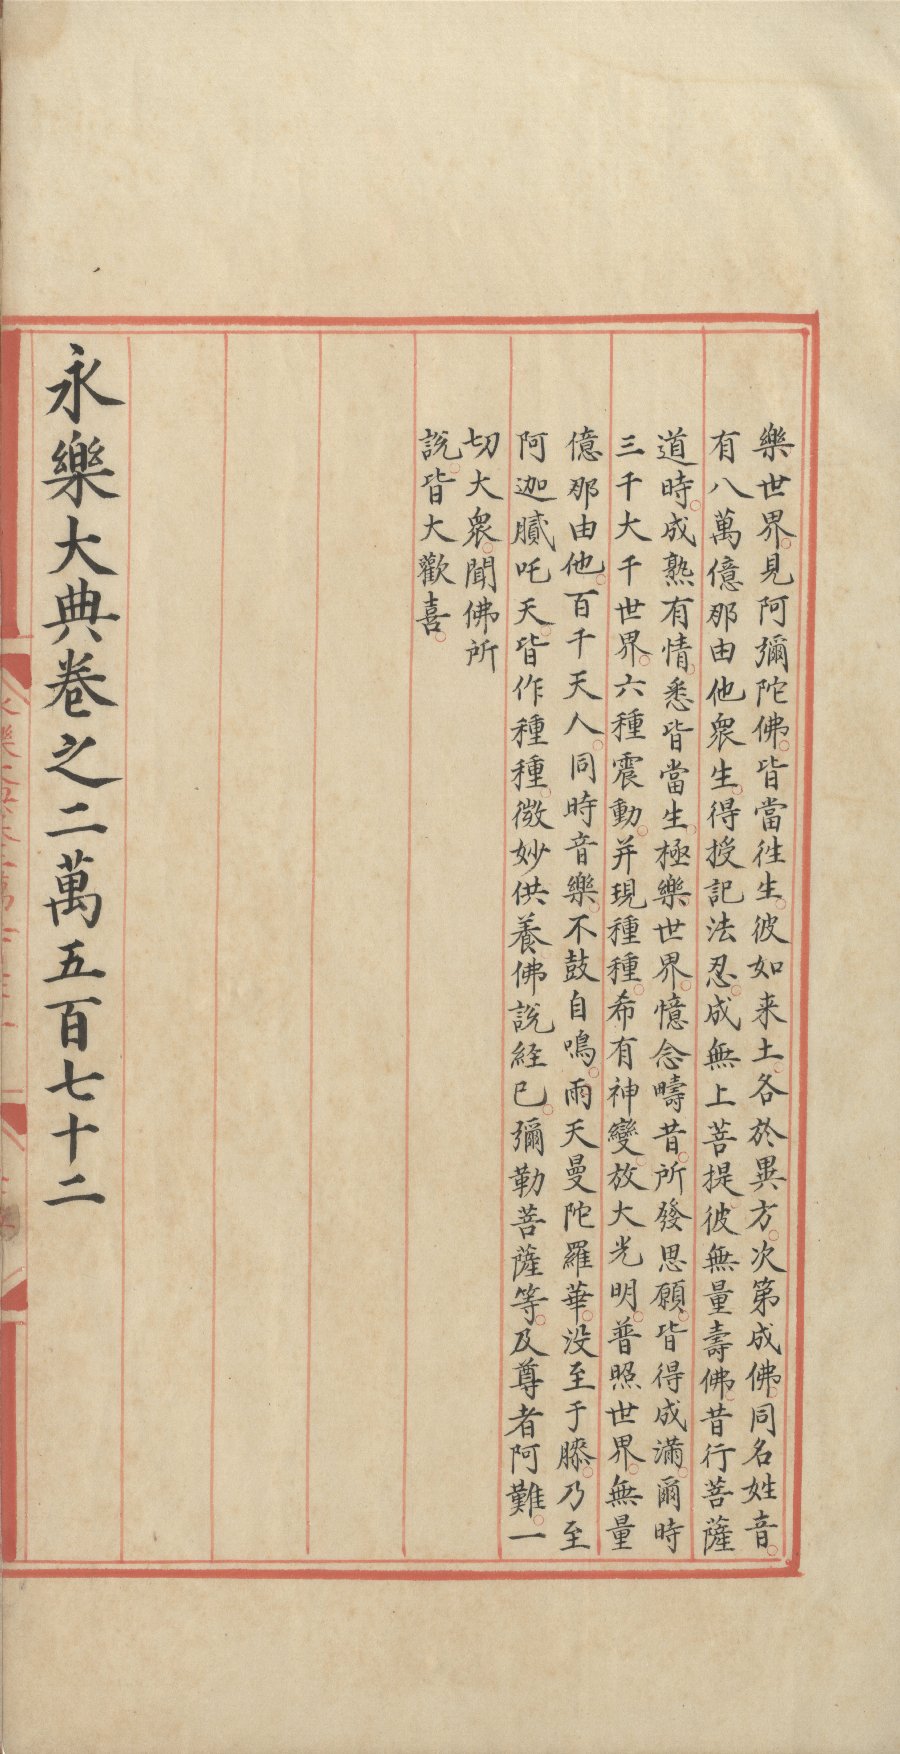 古籍與特藏文獻資源- 國家圖書館-國寶薈萃